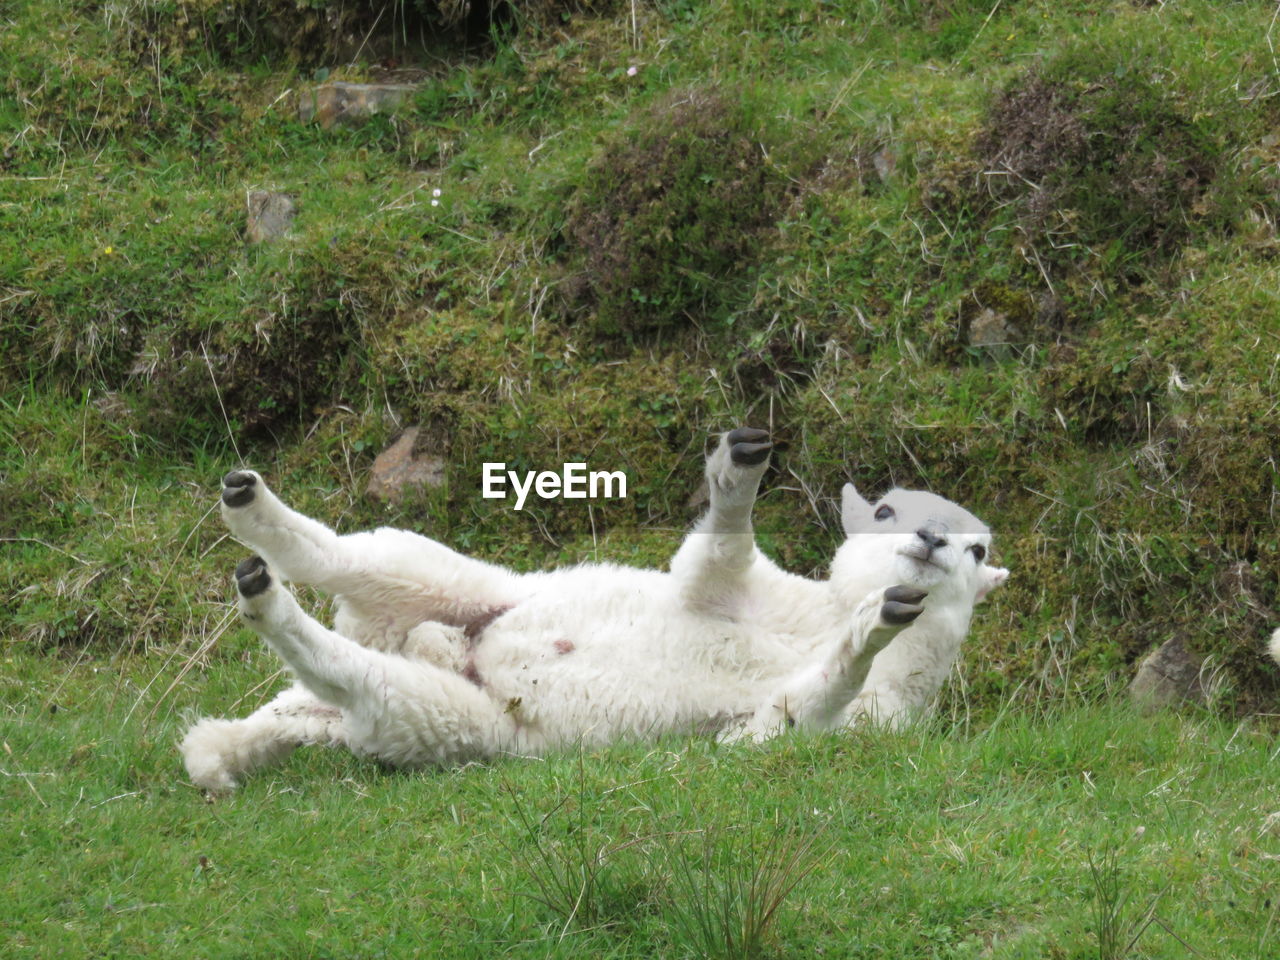 Sheep lying on grassy field